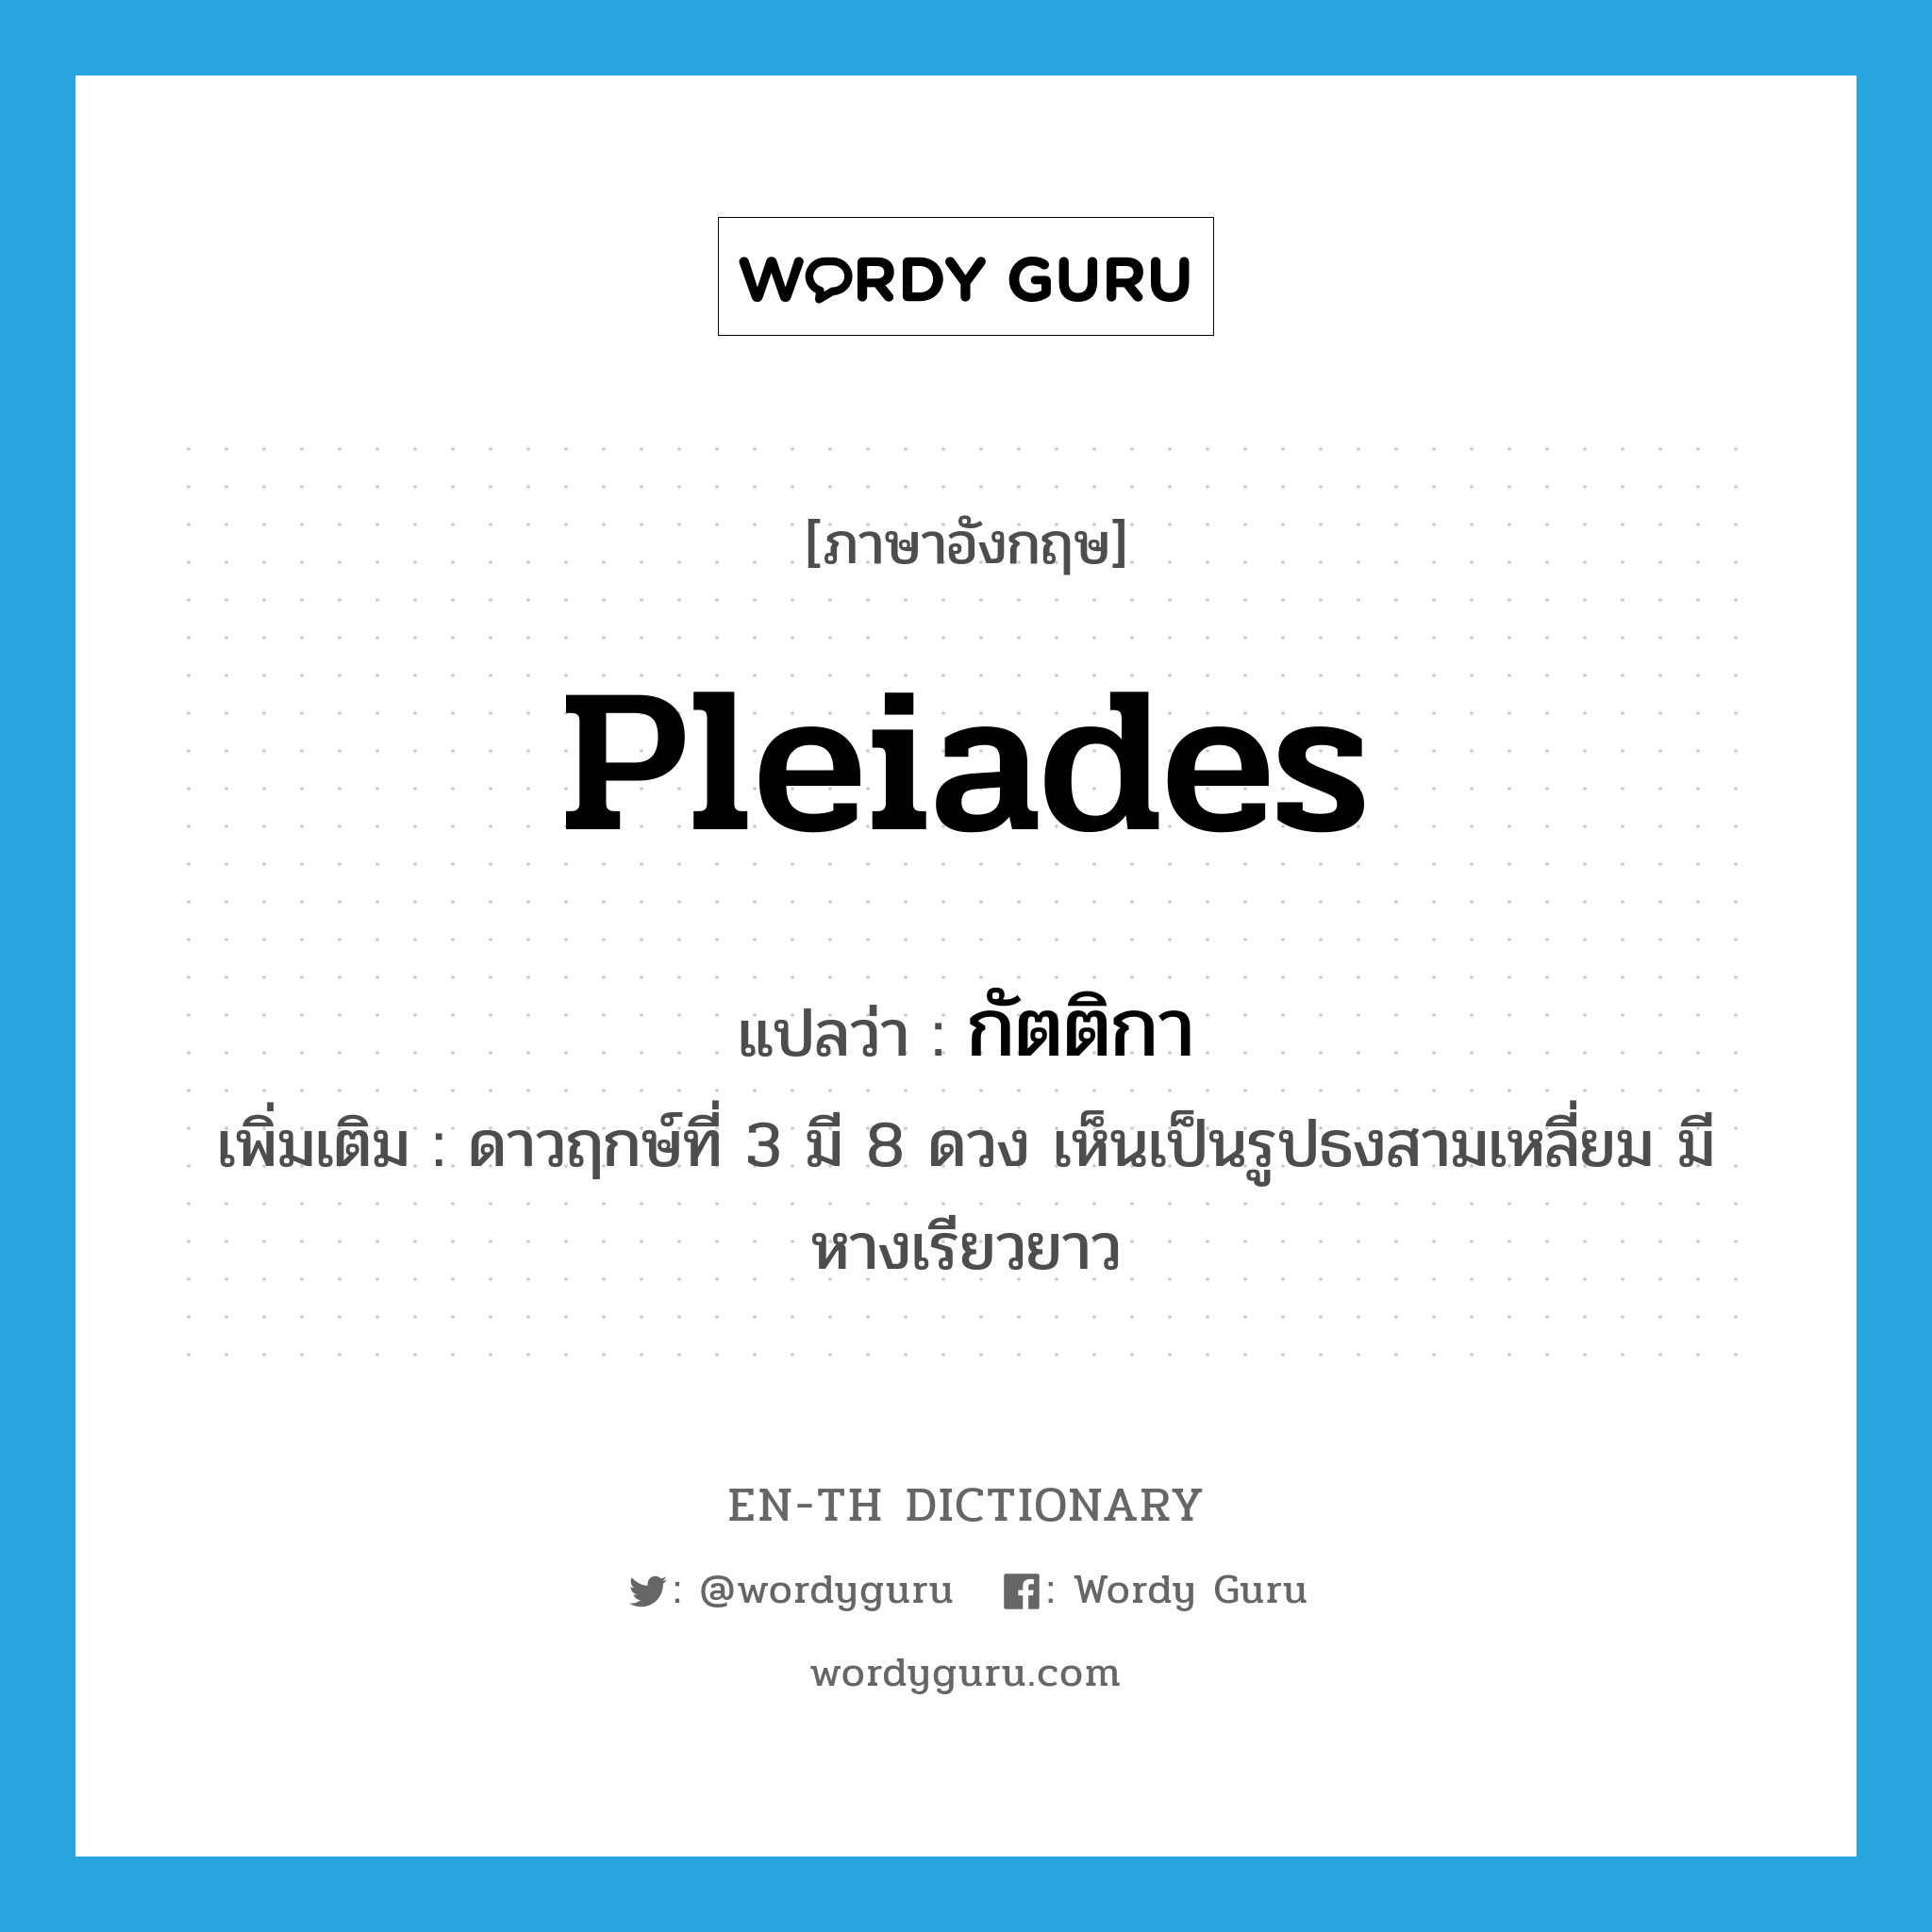 Pleiades แปลว่า?, คำศัพท์ภาษาอังกฤษ Pleiades แปลว่า กัตติกา ประเภท N เพิ่มเติม ดาวฤกษ์ที่ 3 มี 8 ดวง เห็นเป็นรูปธงสามเหลี่ยม มีหางเรียวยาว หมวด N